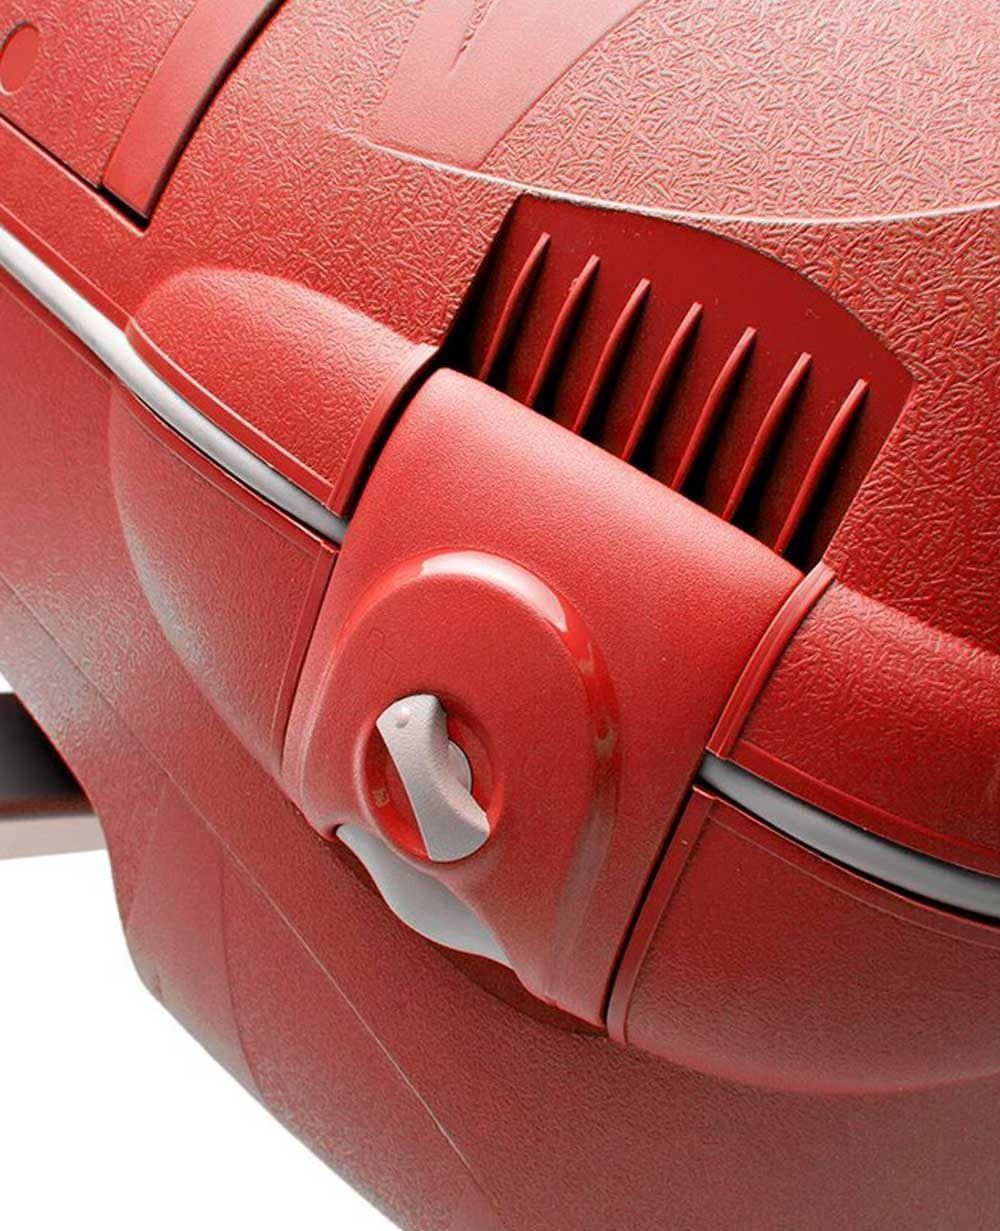 maleta mediana roncato light spinner 4 ruedas roja - Imagen 7